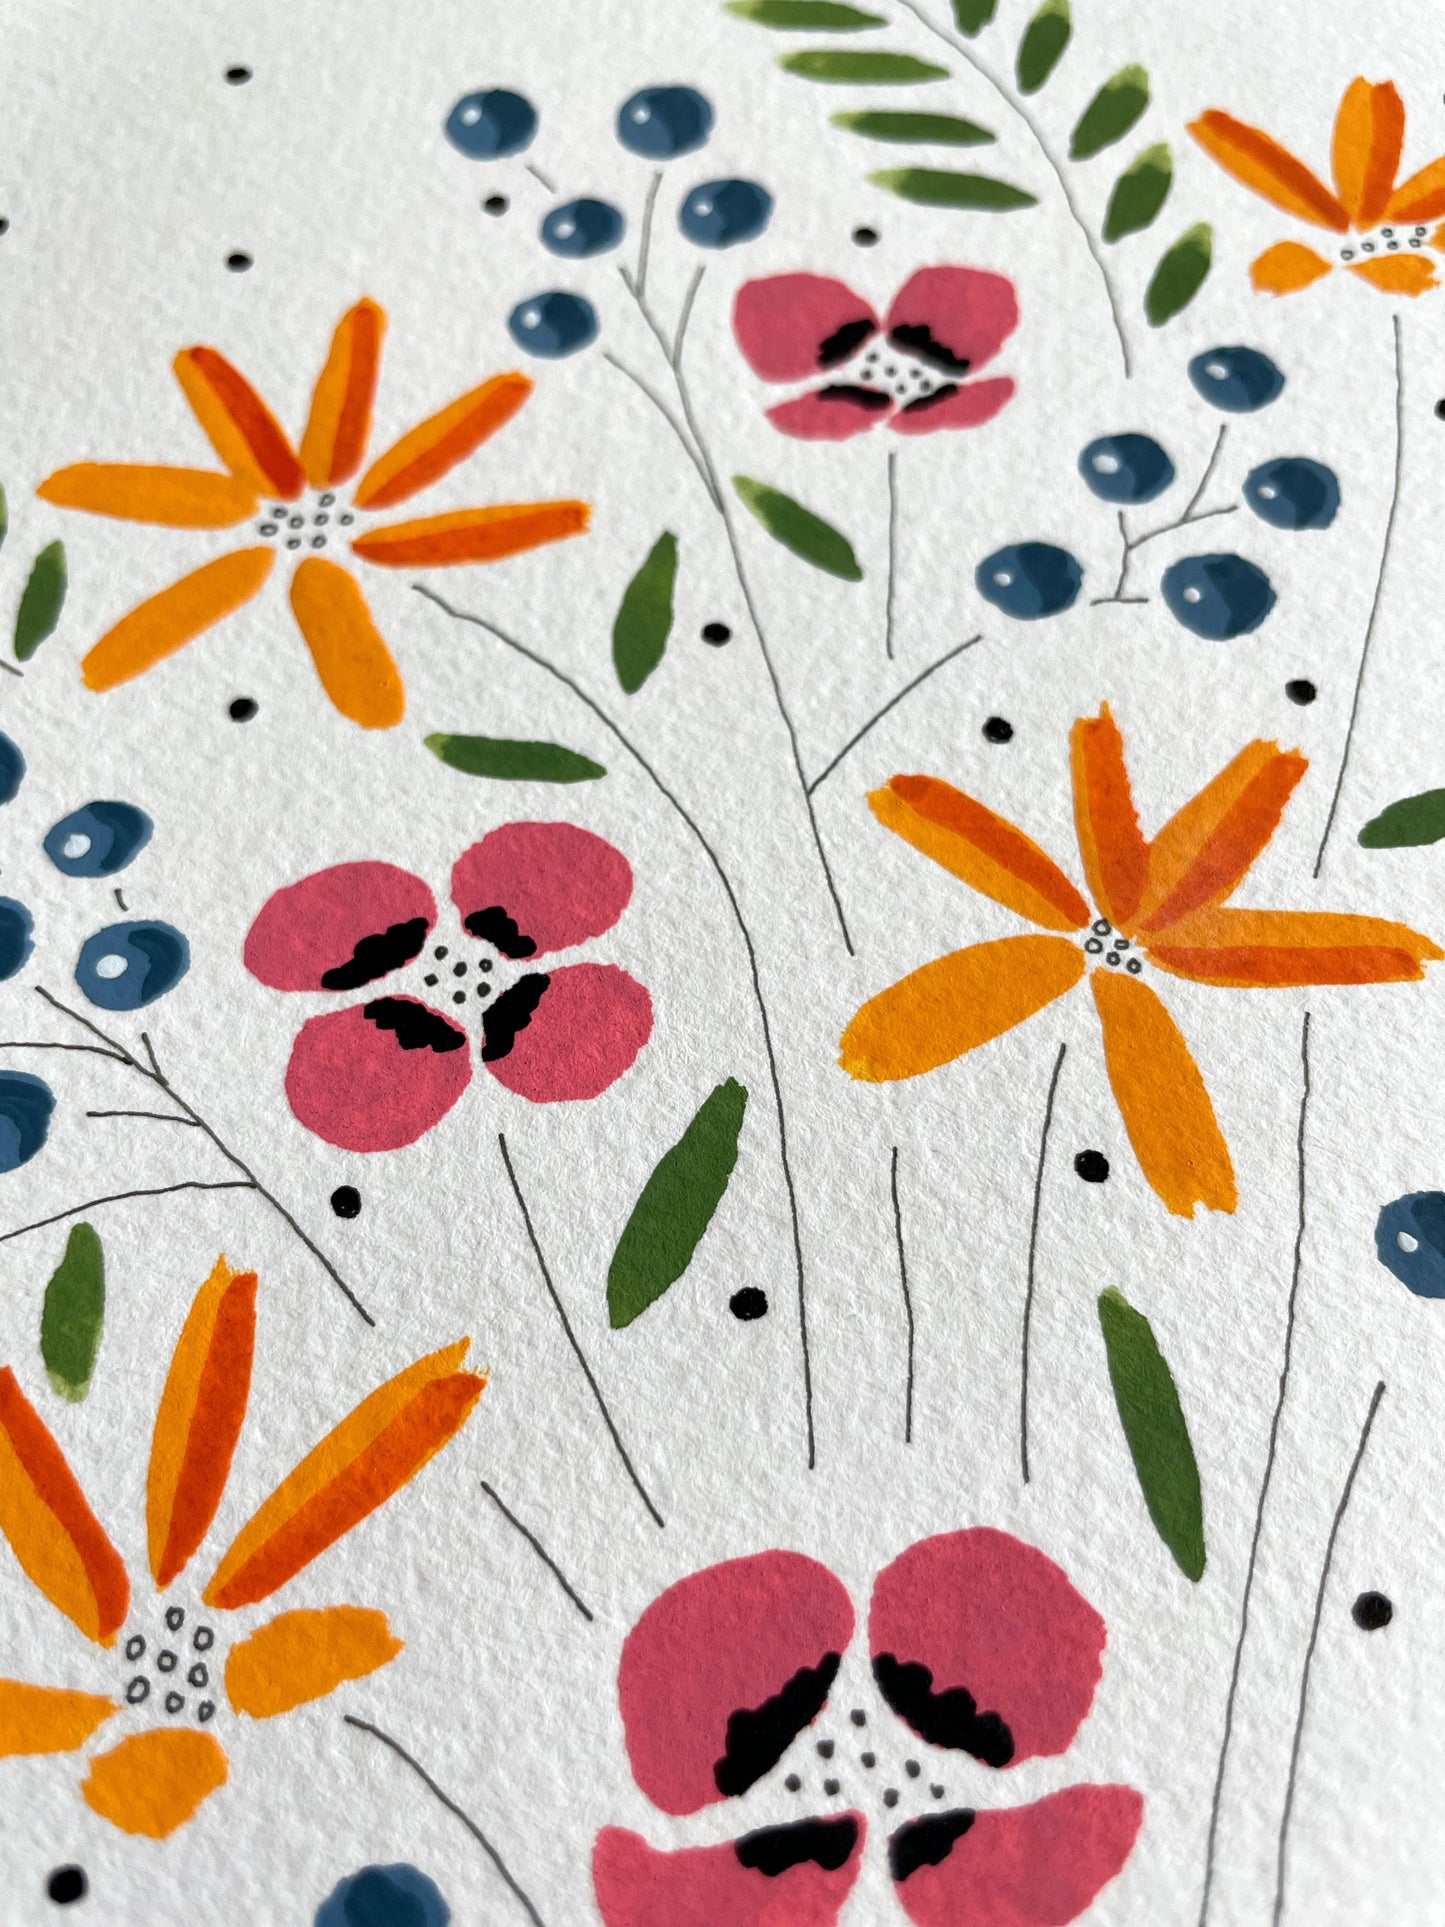 Floral Gouache Original 9x12 Painting - Lilyvine Design